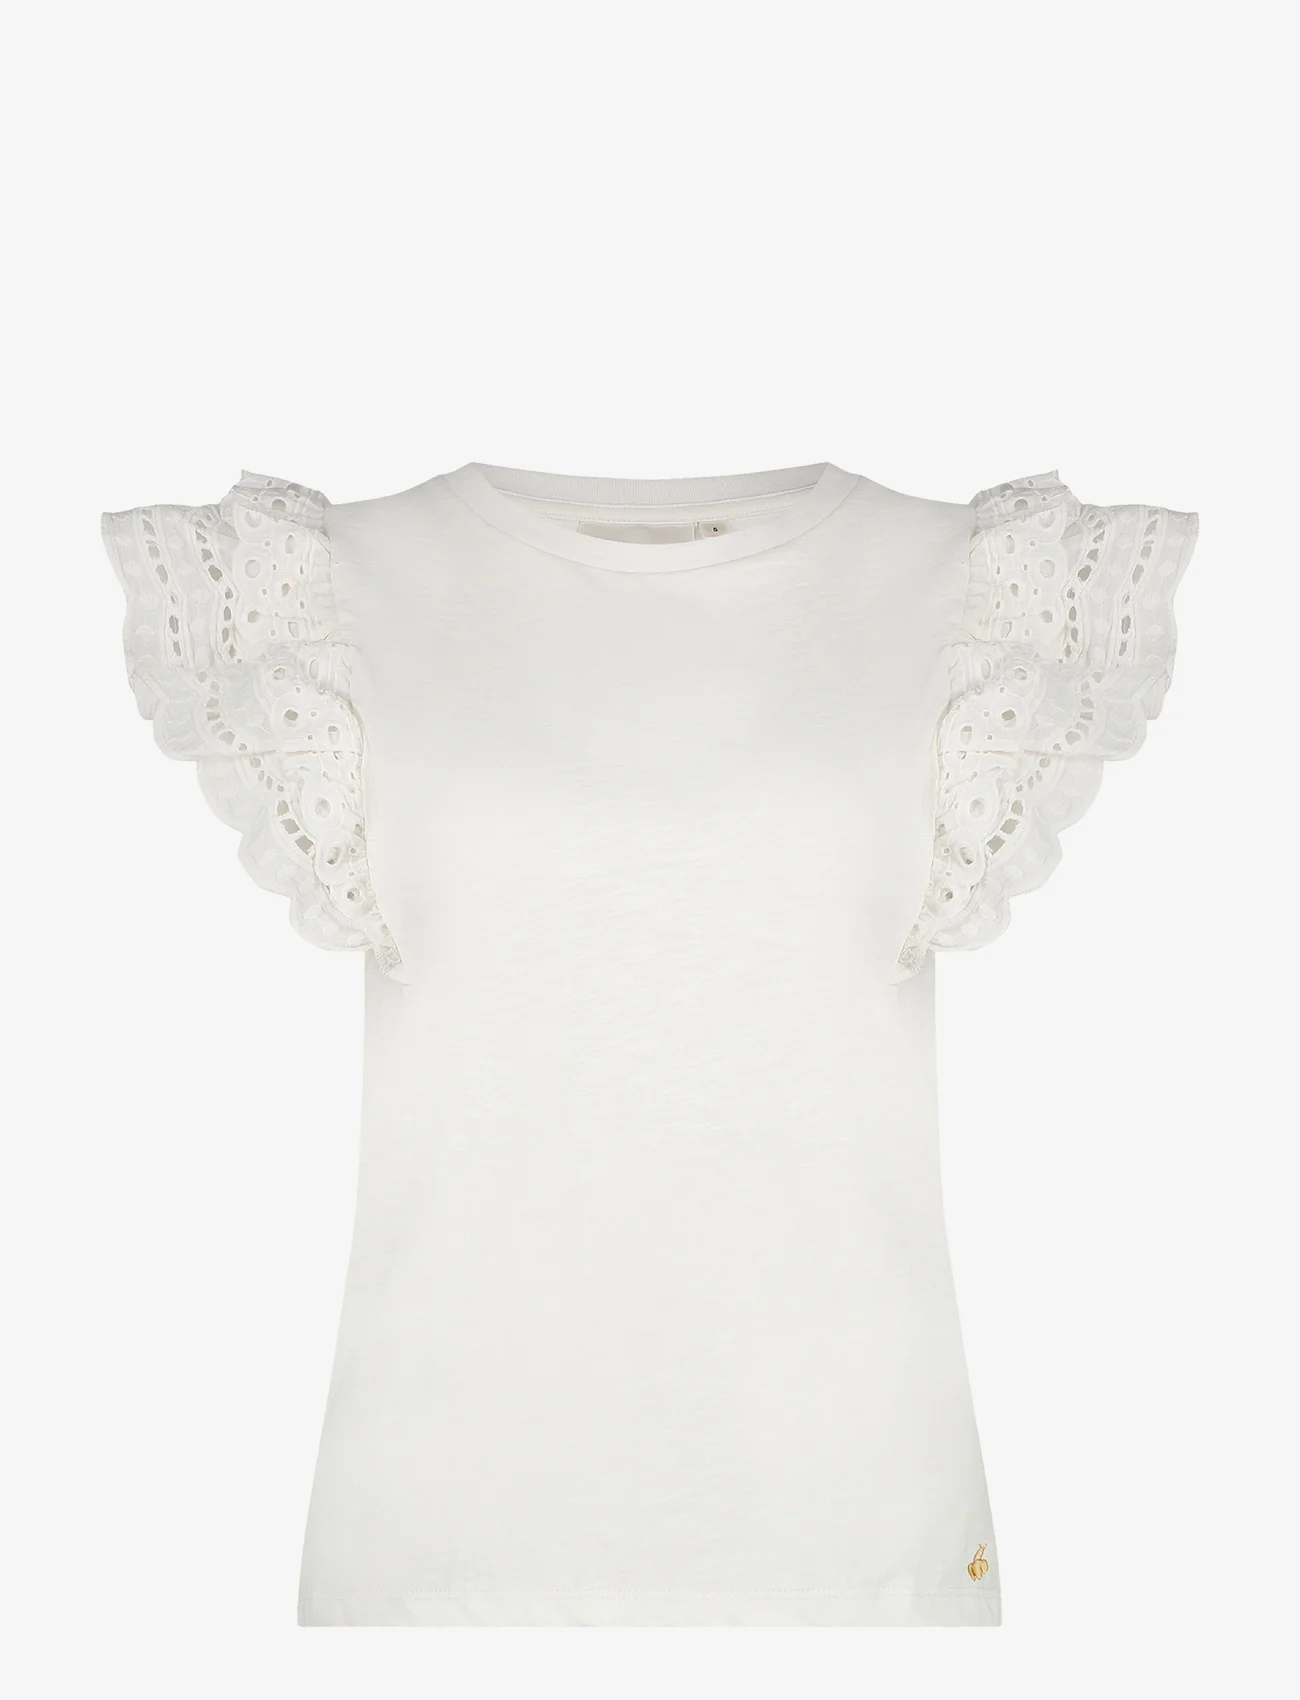 Fabienne Chapot - Anna Top - t-shirty - cream white - 0